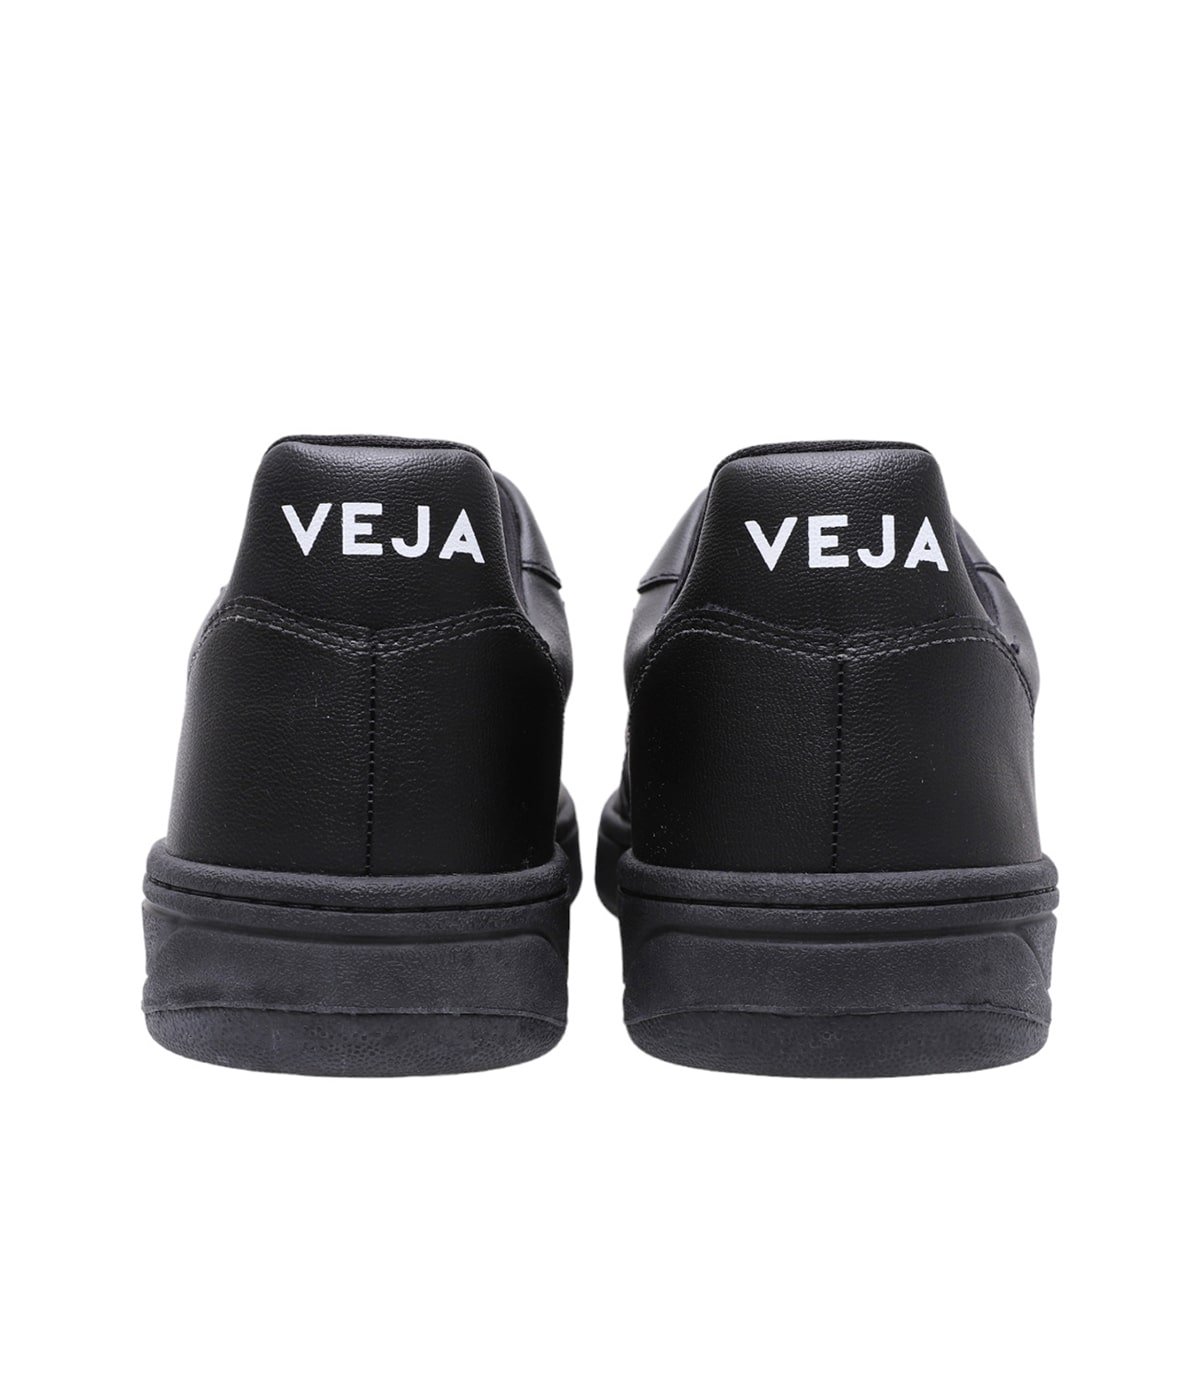 V-10 | VEJA(ヴェジャ) / シューズ スニーカー (メンズ)の通販